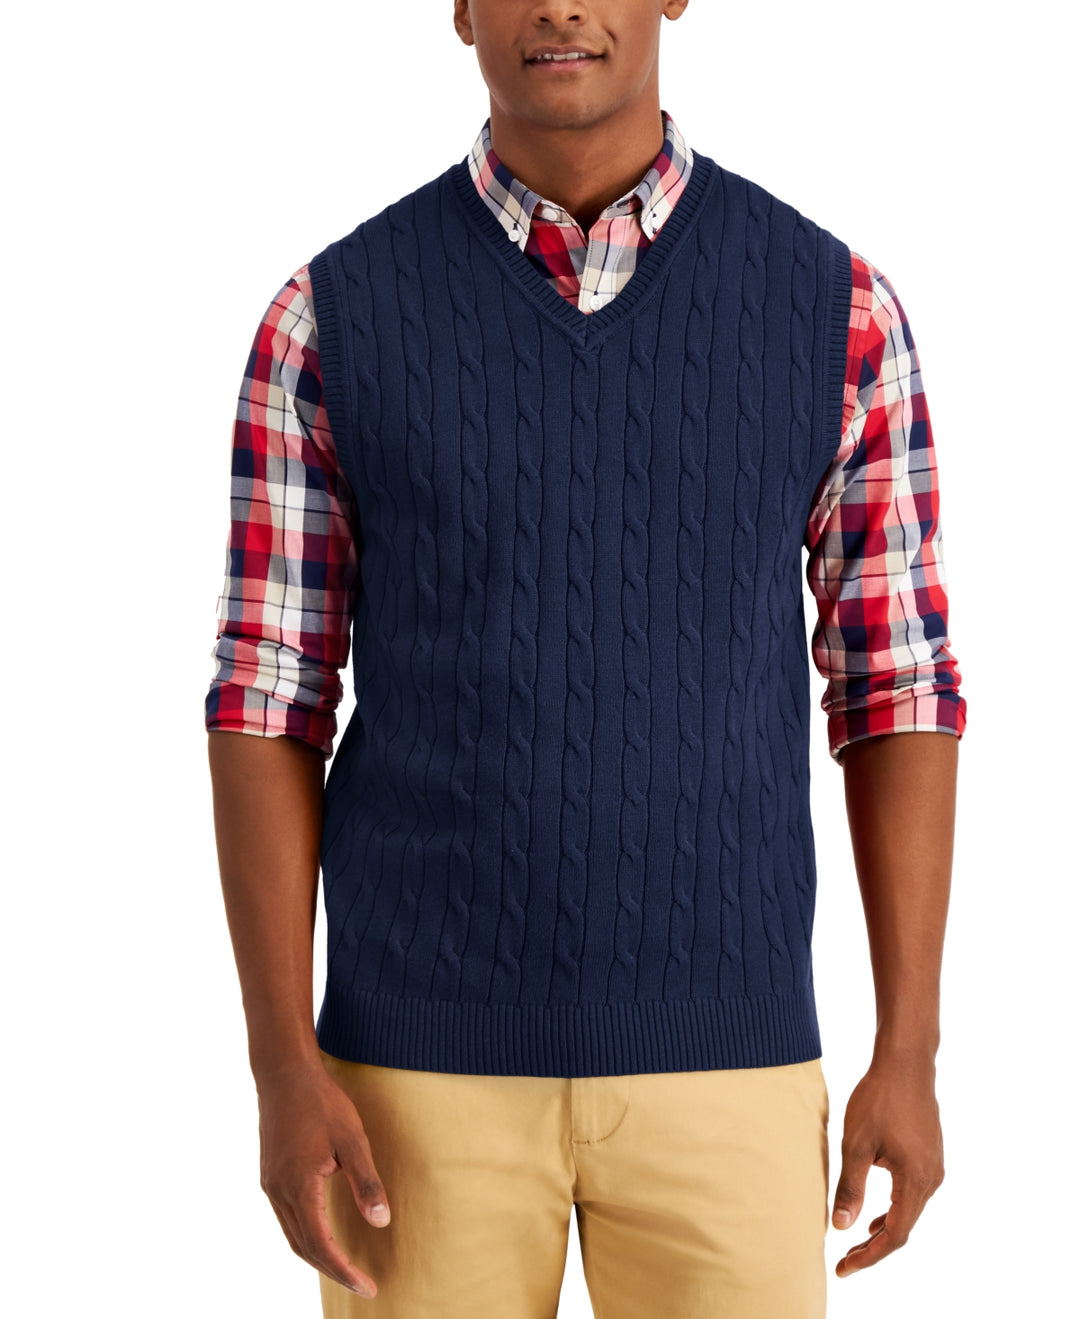 Club Room Men's Cable Knit Cotton Sweater Vest Blue Size Medium